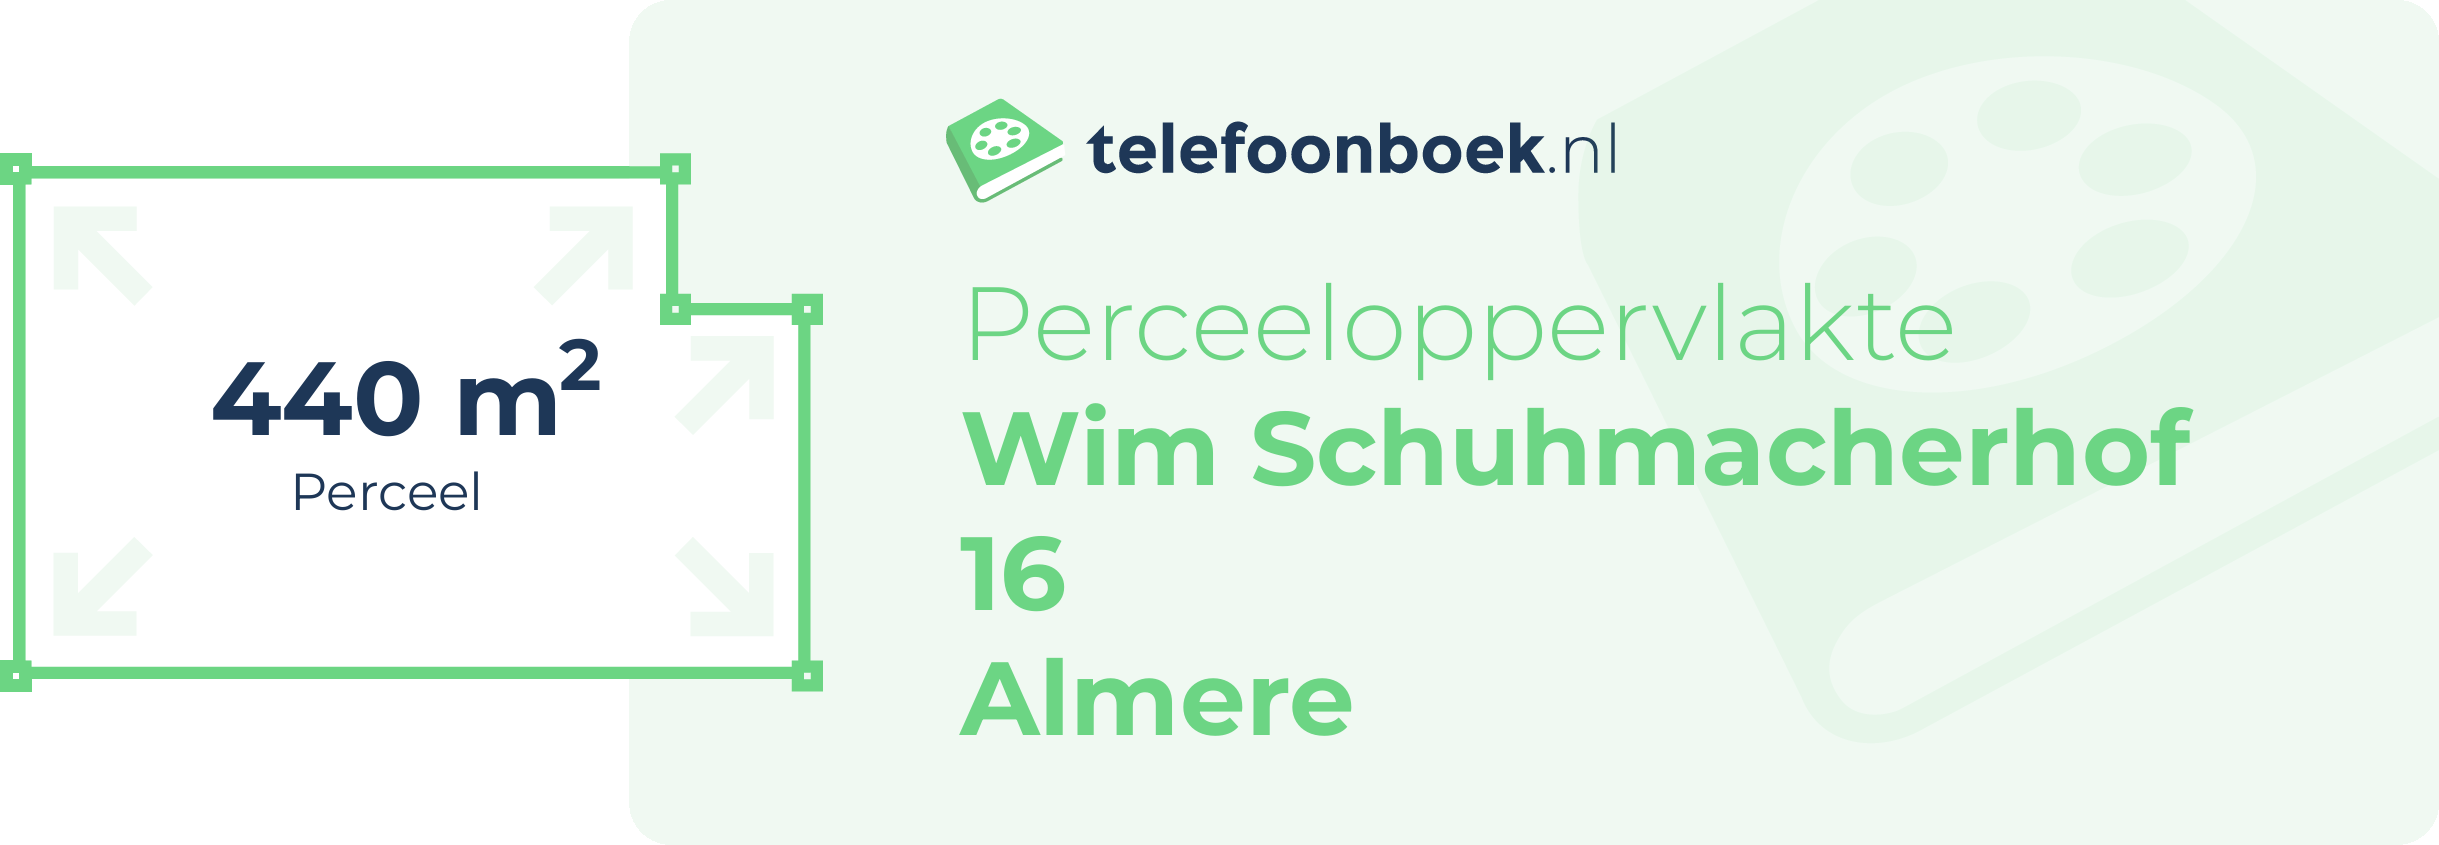 Perceeloppervlakte Wim Schuhmacherhof 16 Almere